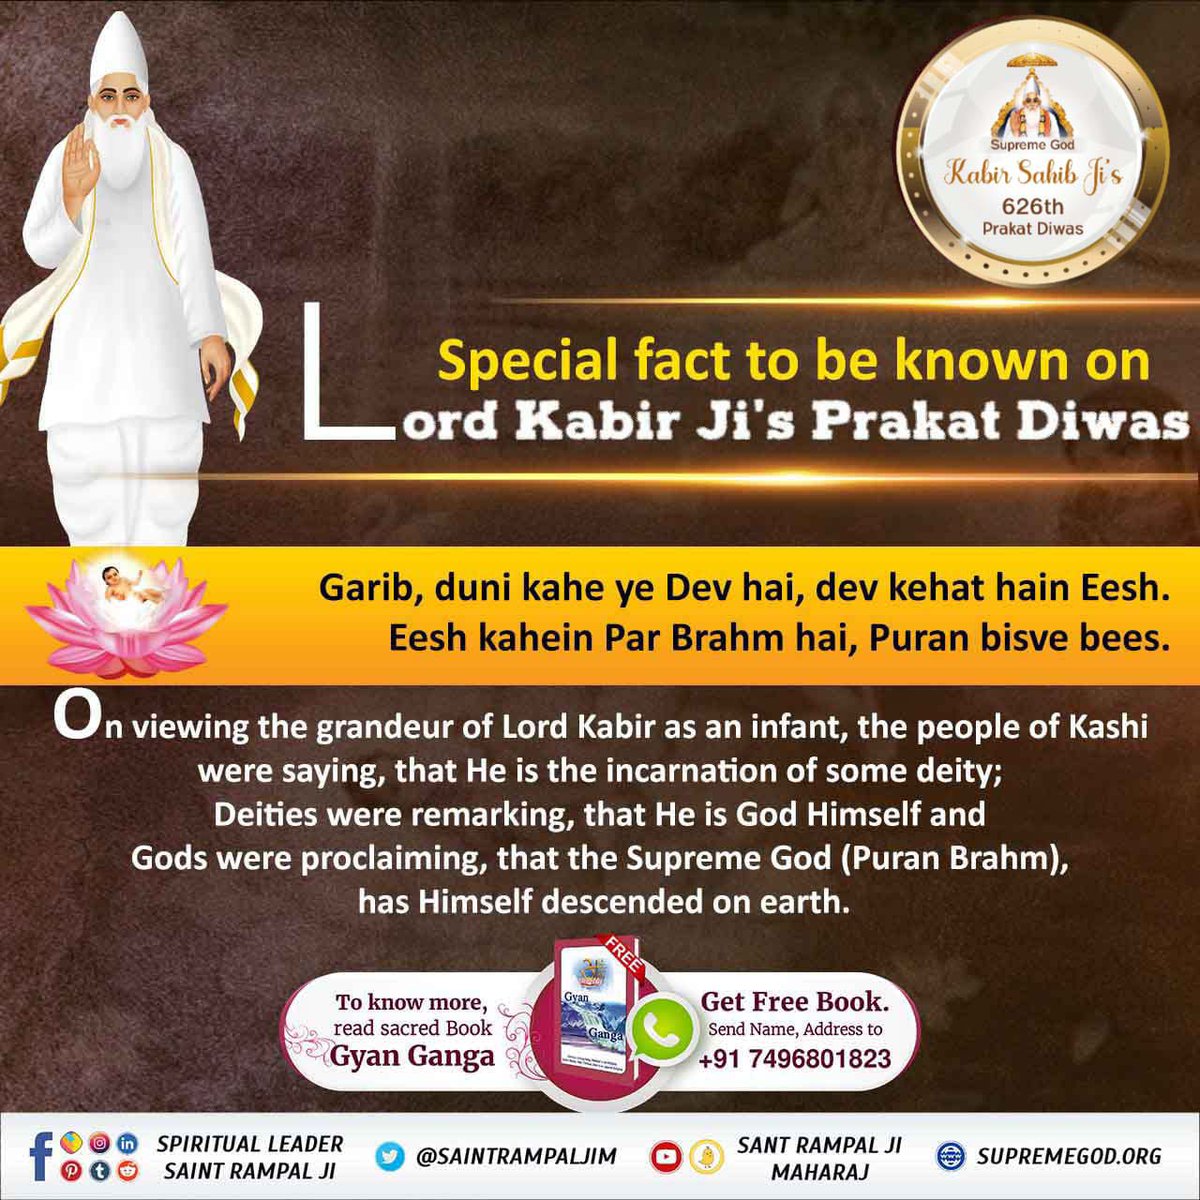 #कबीरजी_का_कलयुगमें_प्राकट्य
Special fact to be known on lordKabir ji's prakat diwas 
3 Days Left Kabir Prakat Diwas

Kabir is god